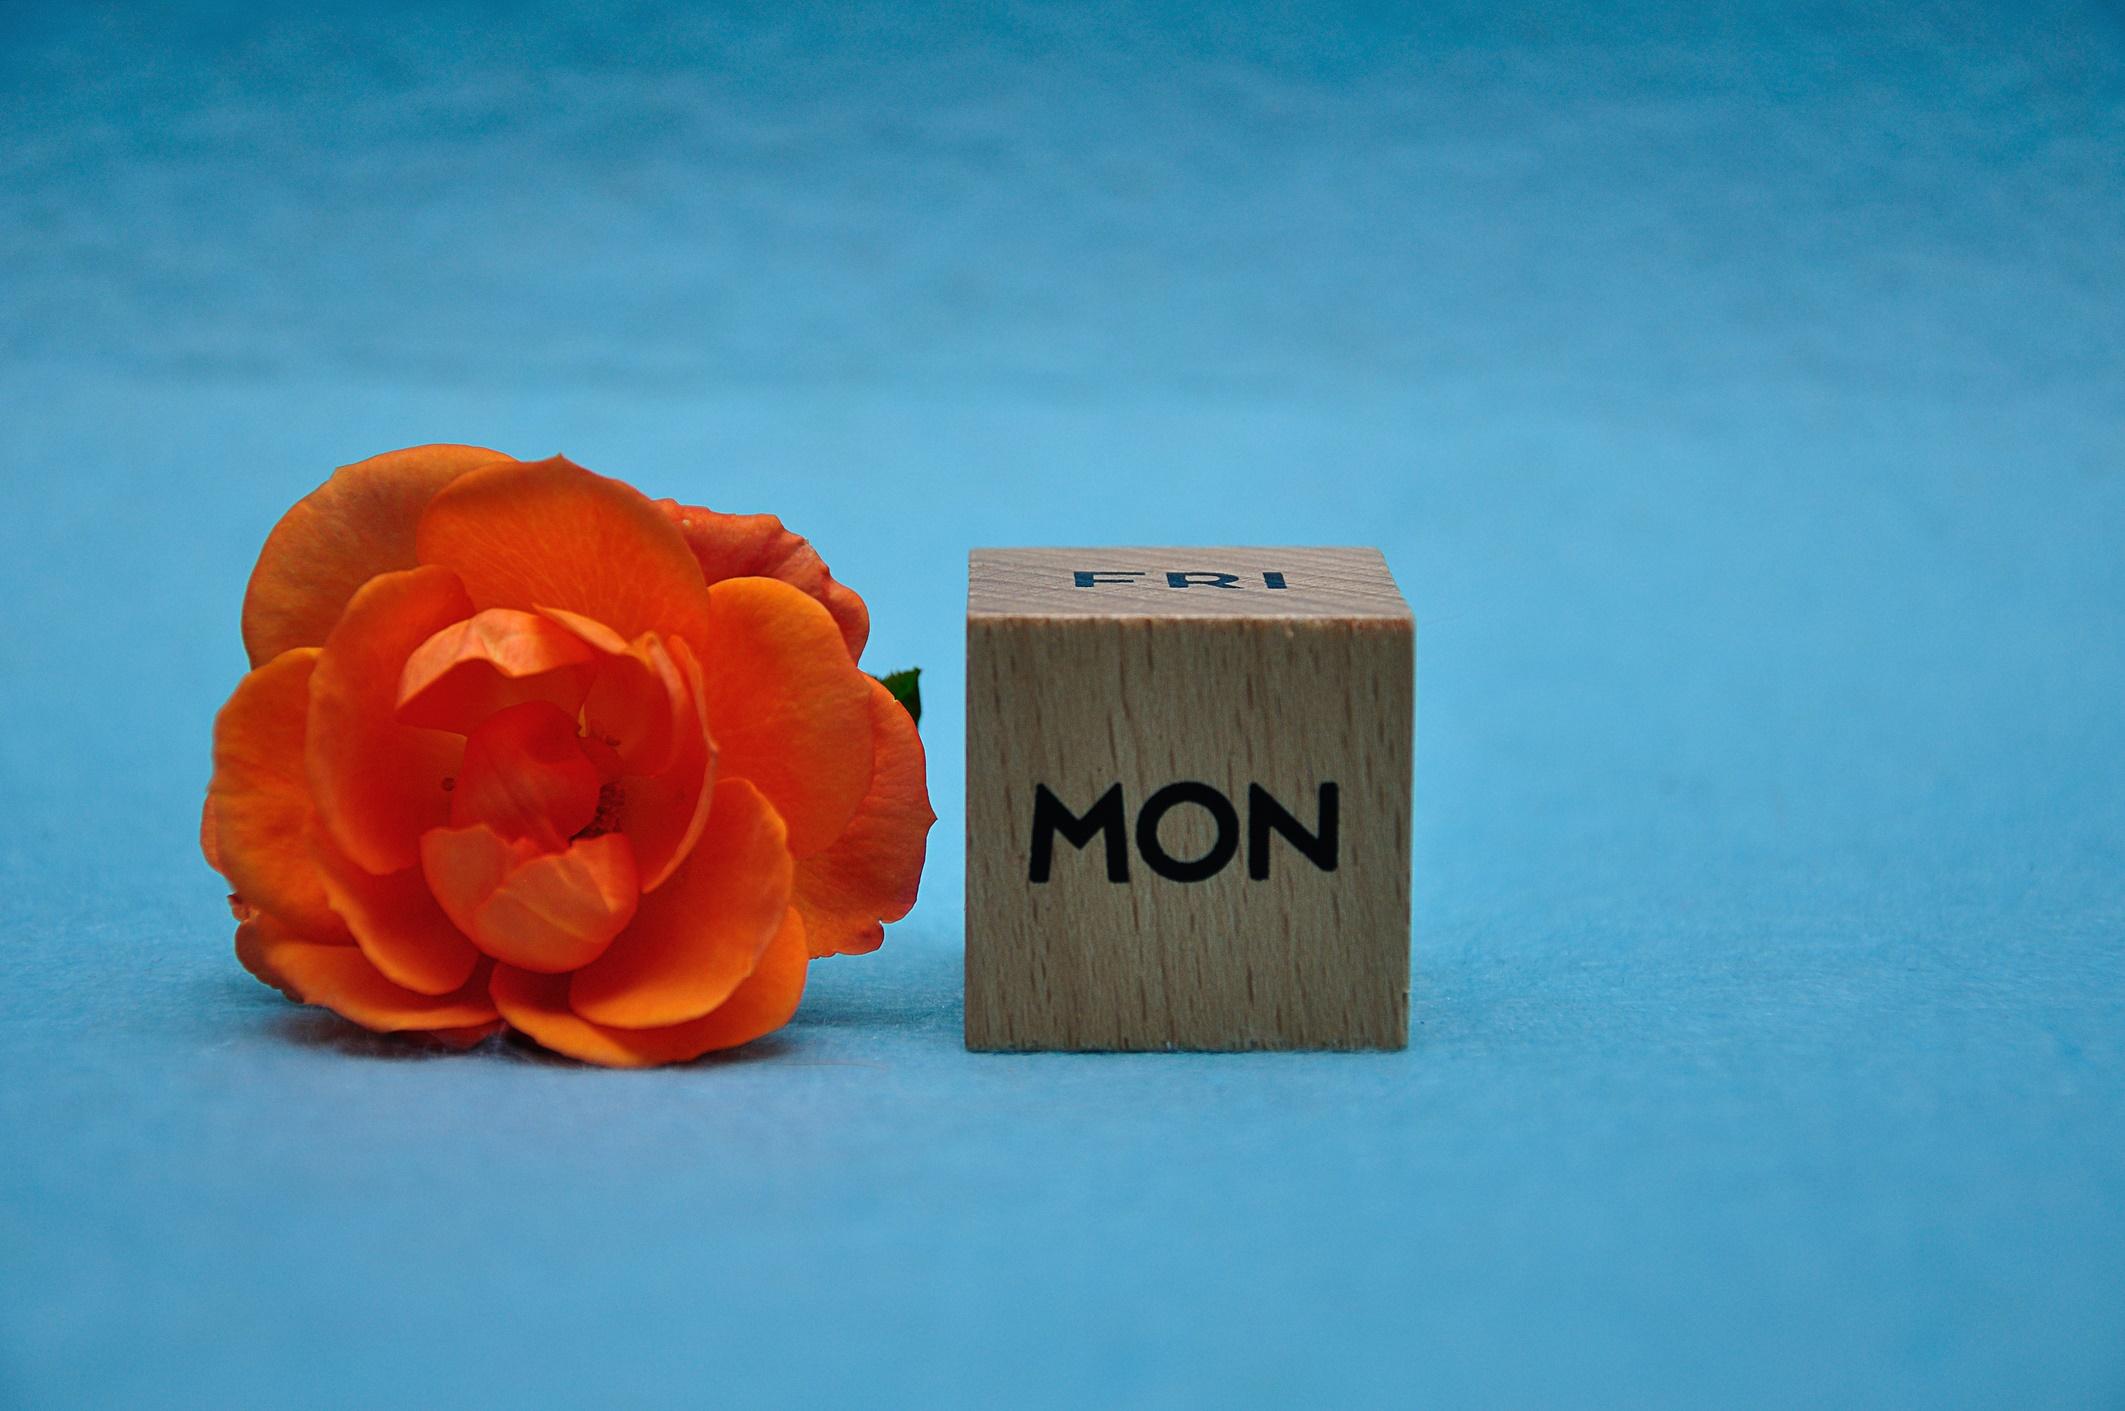 Die Abkürzung für Montag auf einem Holzblock mit einer orangefarbenen Rose auf blauem Grund